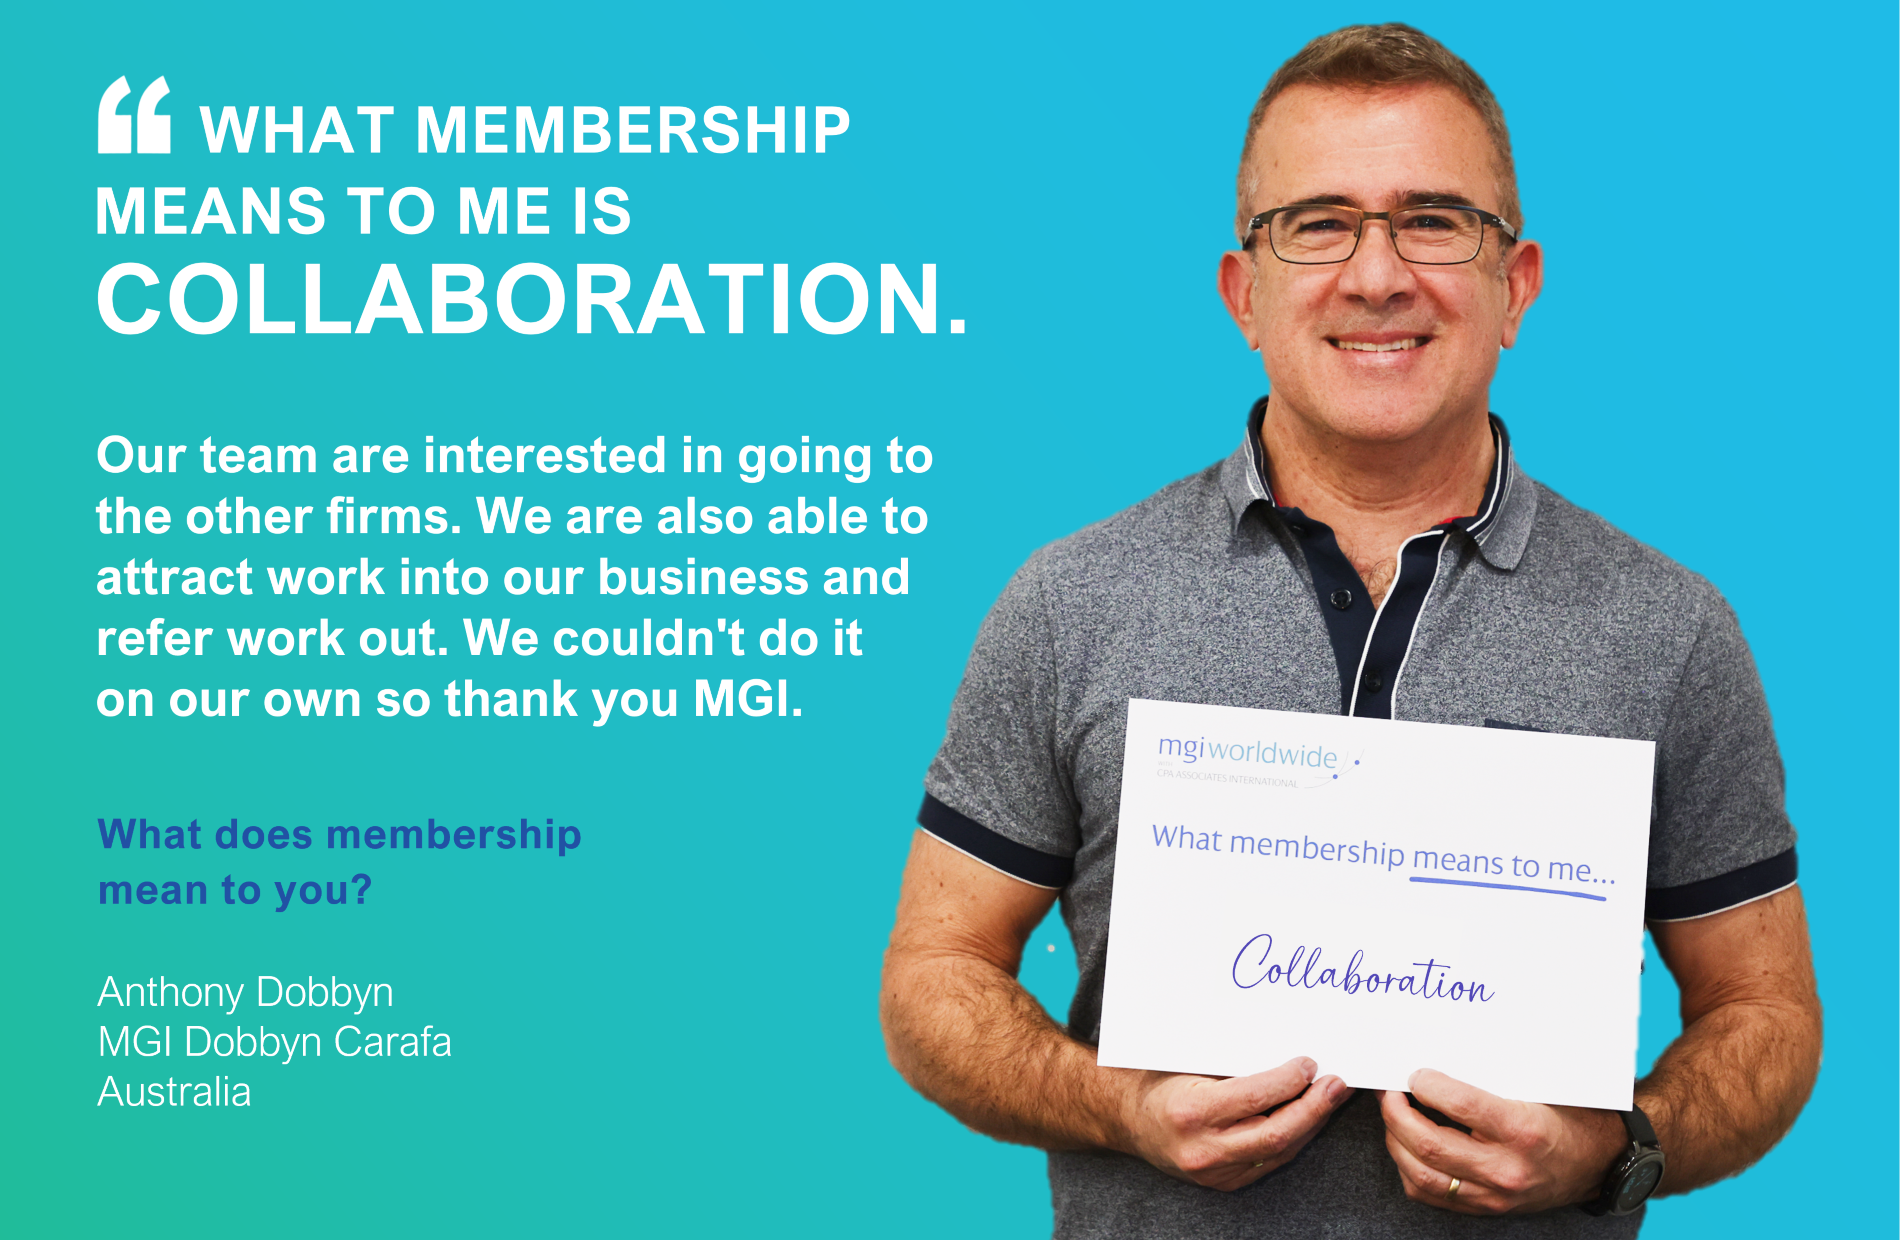 Membership means Brand to Anthony Dobbyn of MGI Dobbyn Carafa, Australia